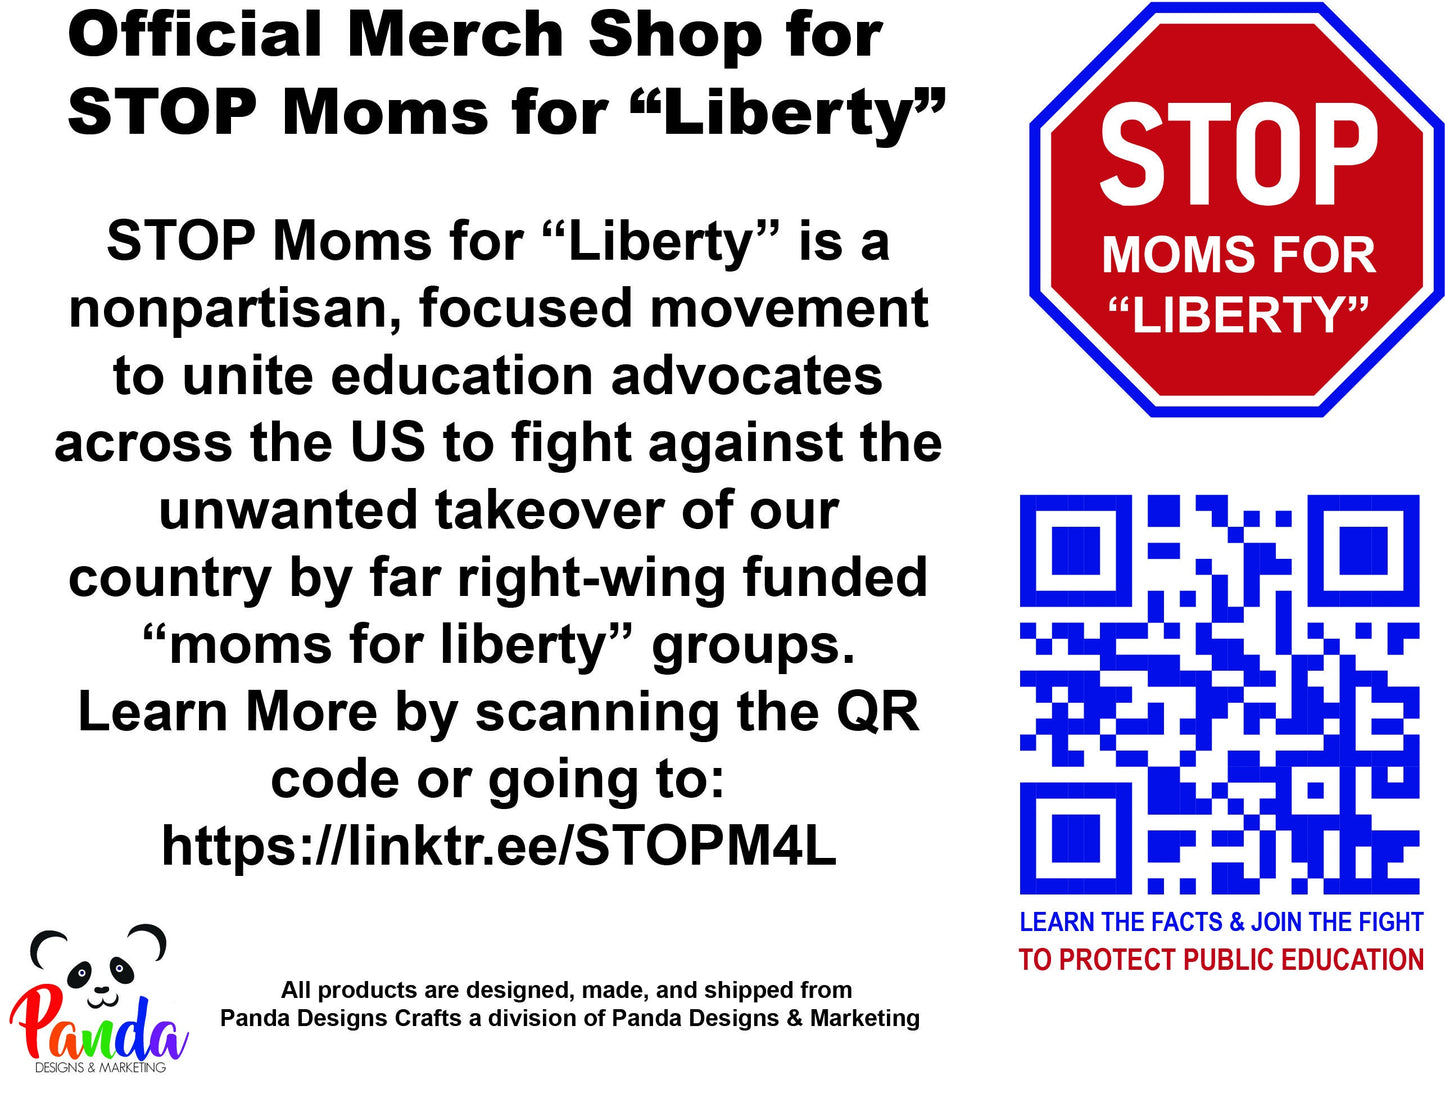 Ceramic Mug - STOP Moms for Liberty